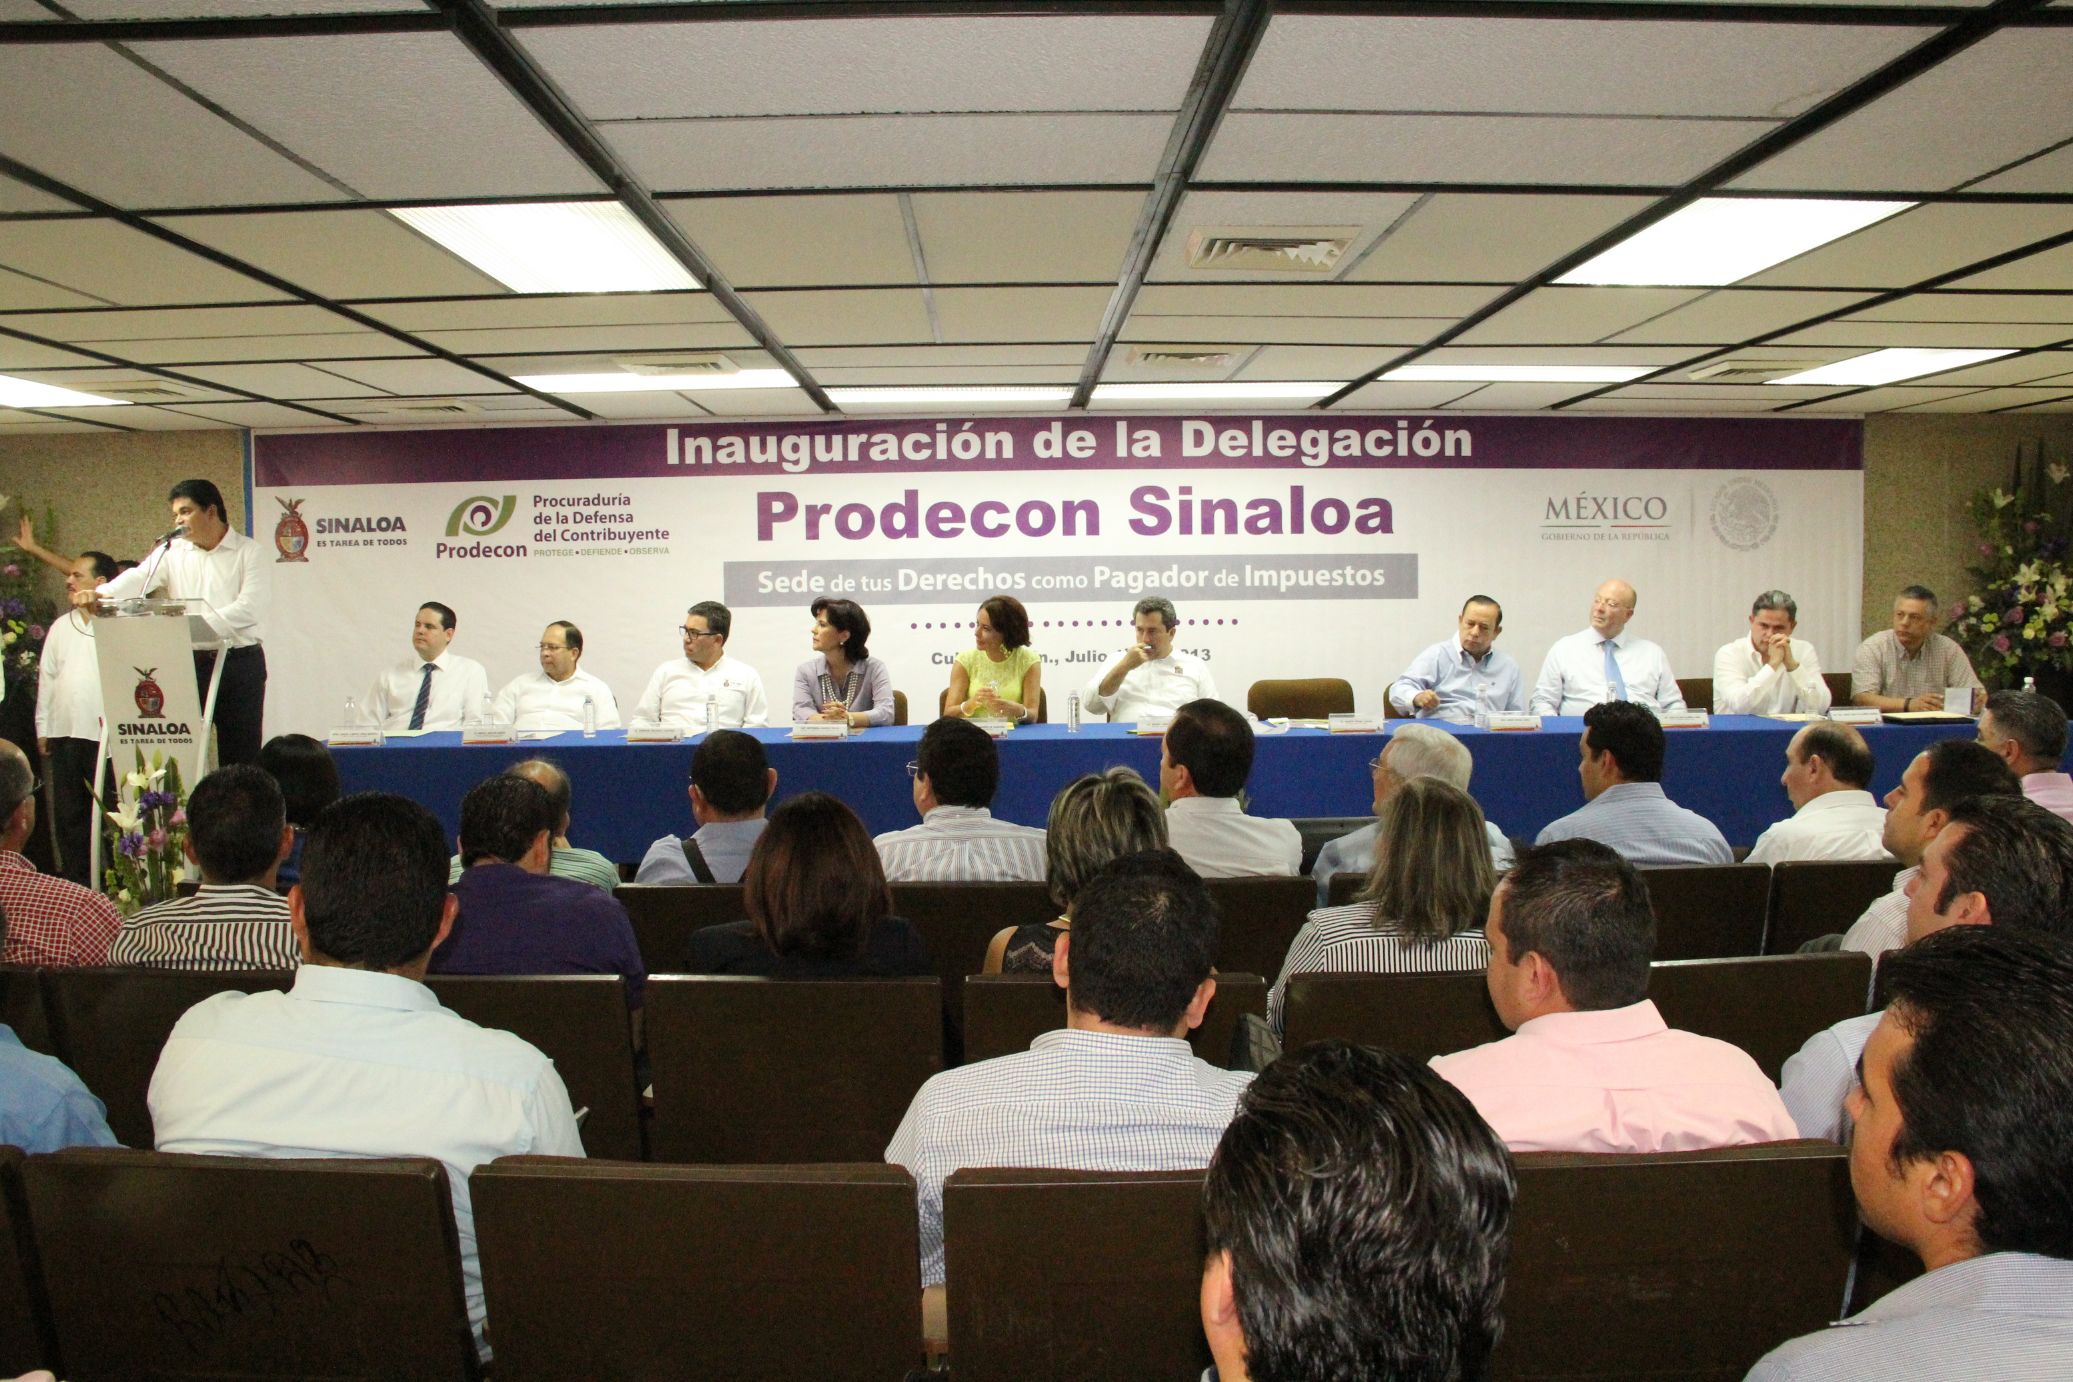 La inauguración de la Delegación Sinaloa de Prodecon contó con la presencia de más de 300 invitados entre los cuales se encontraban autoridades, al igual que representantes de cámaras y asociaciones empresariales, miembros de academias, instituciones y colegios especializados en materia fiscal.